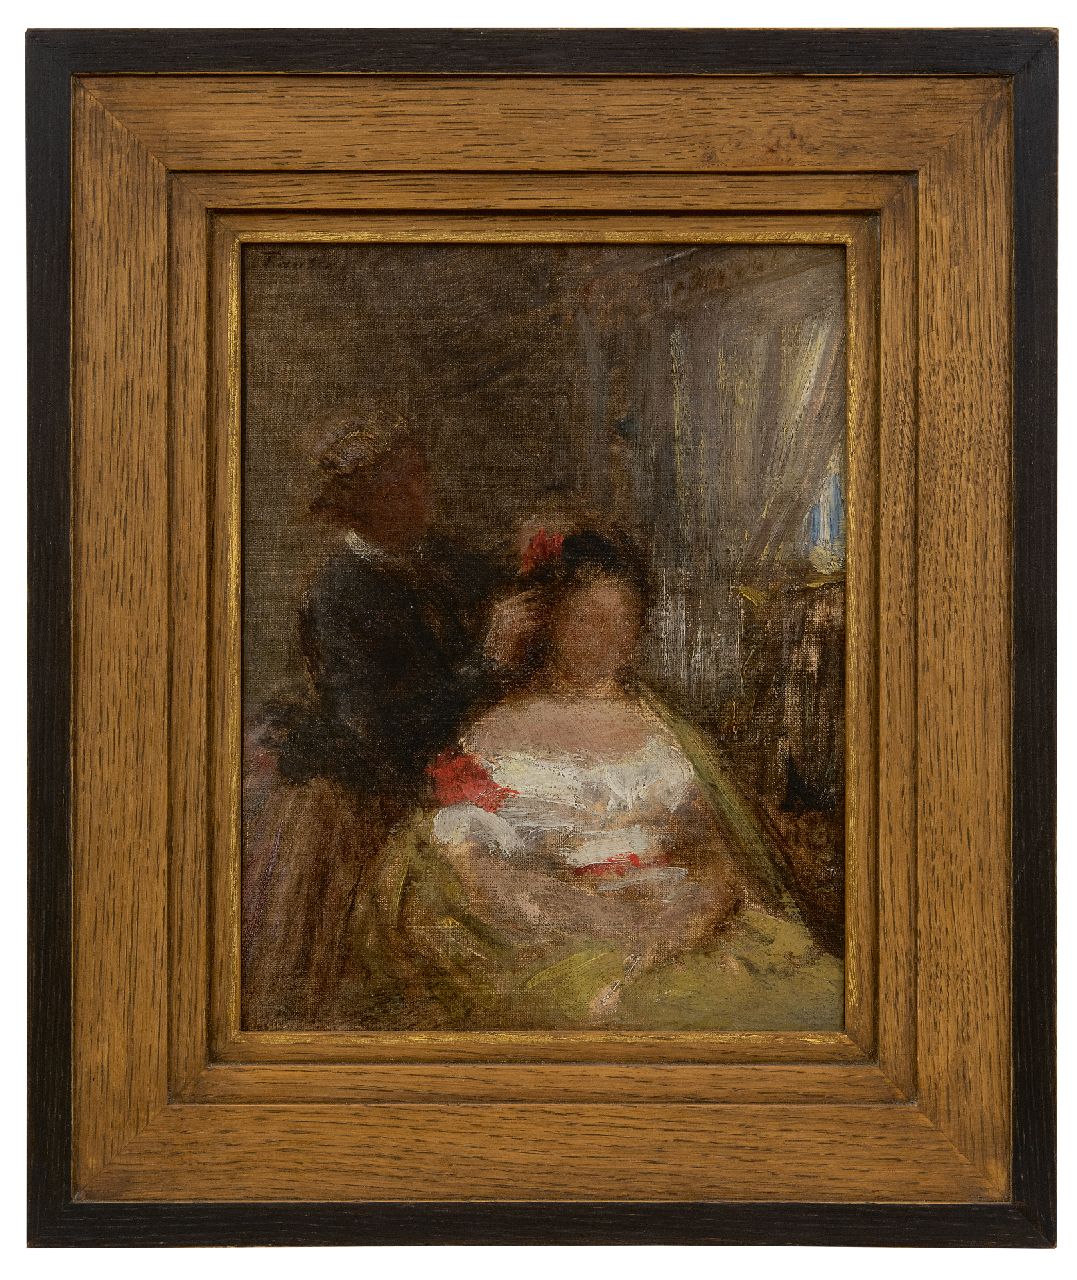 Fantin-Latour I.H.J.T.  | Ignace 'Henri' Jean Théodore Fantin-Latour | Schilderijen te koop aangeboden | La coiffeuse, olieverf op doek 27,0 x 21,2 cm, gesigneerd linksboven